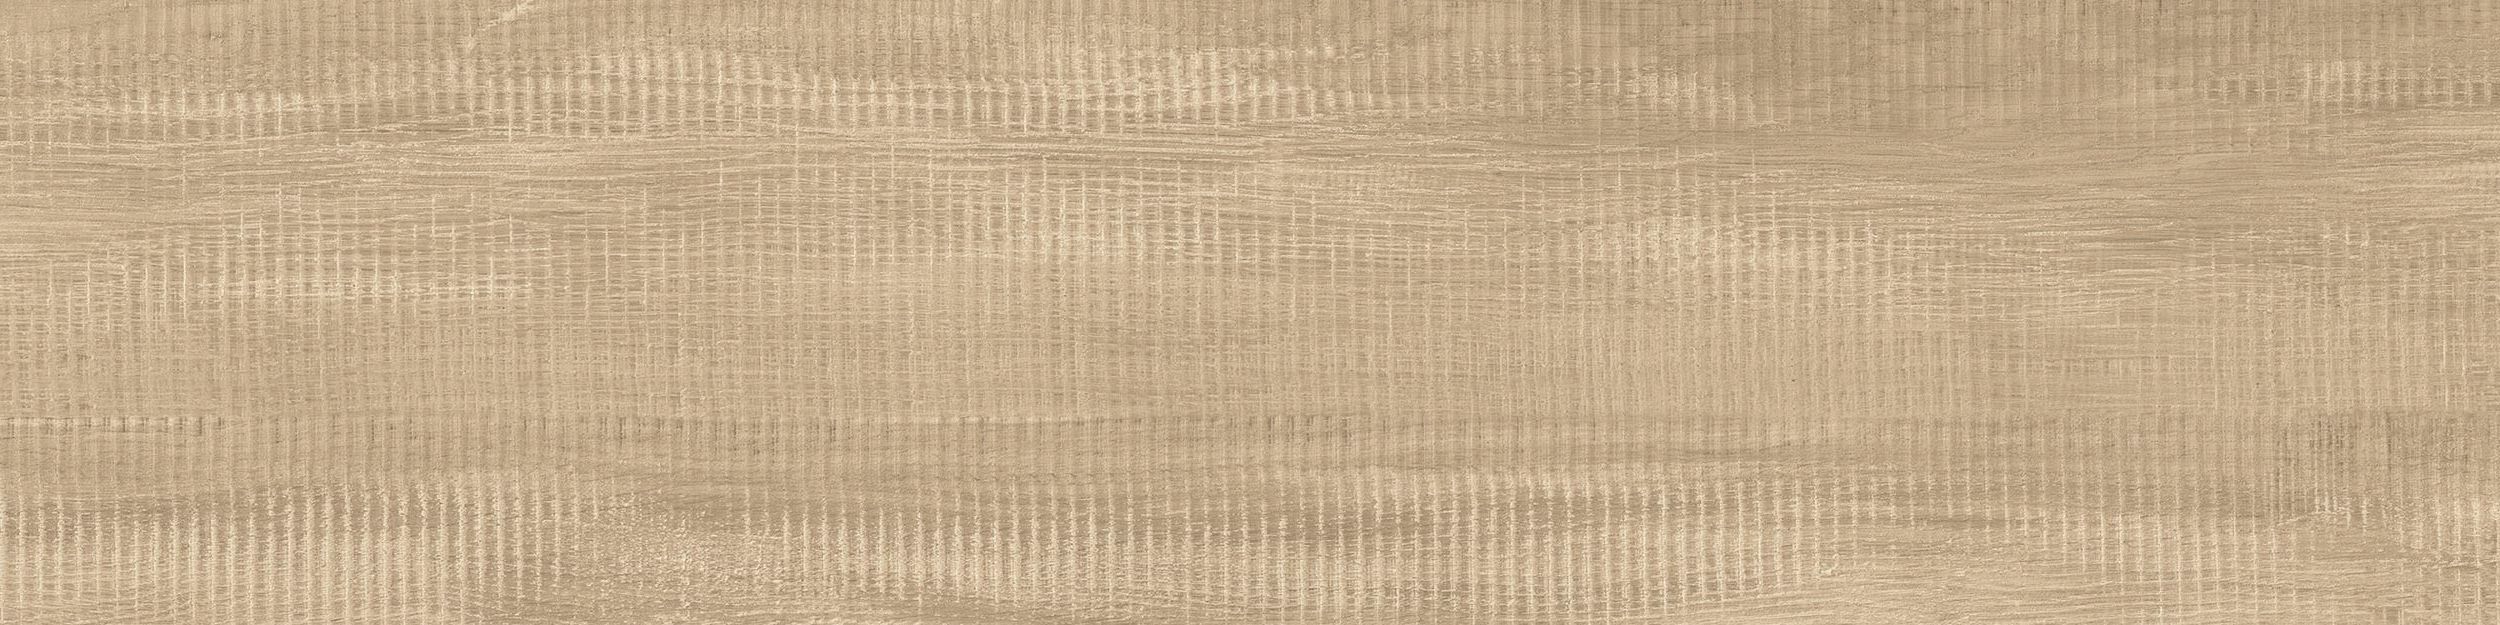 Textured Woodgrains LVT In Rustic Cashew imagen número 1